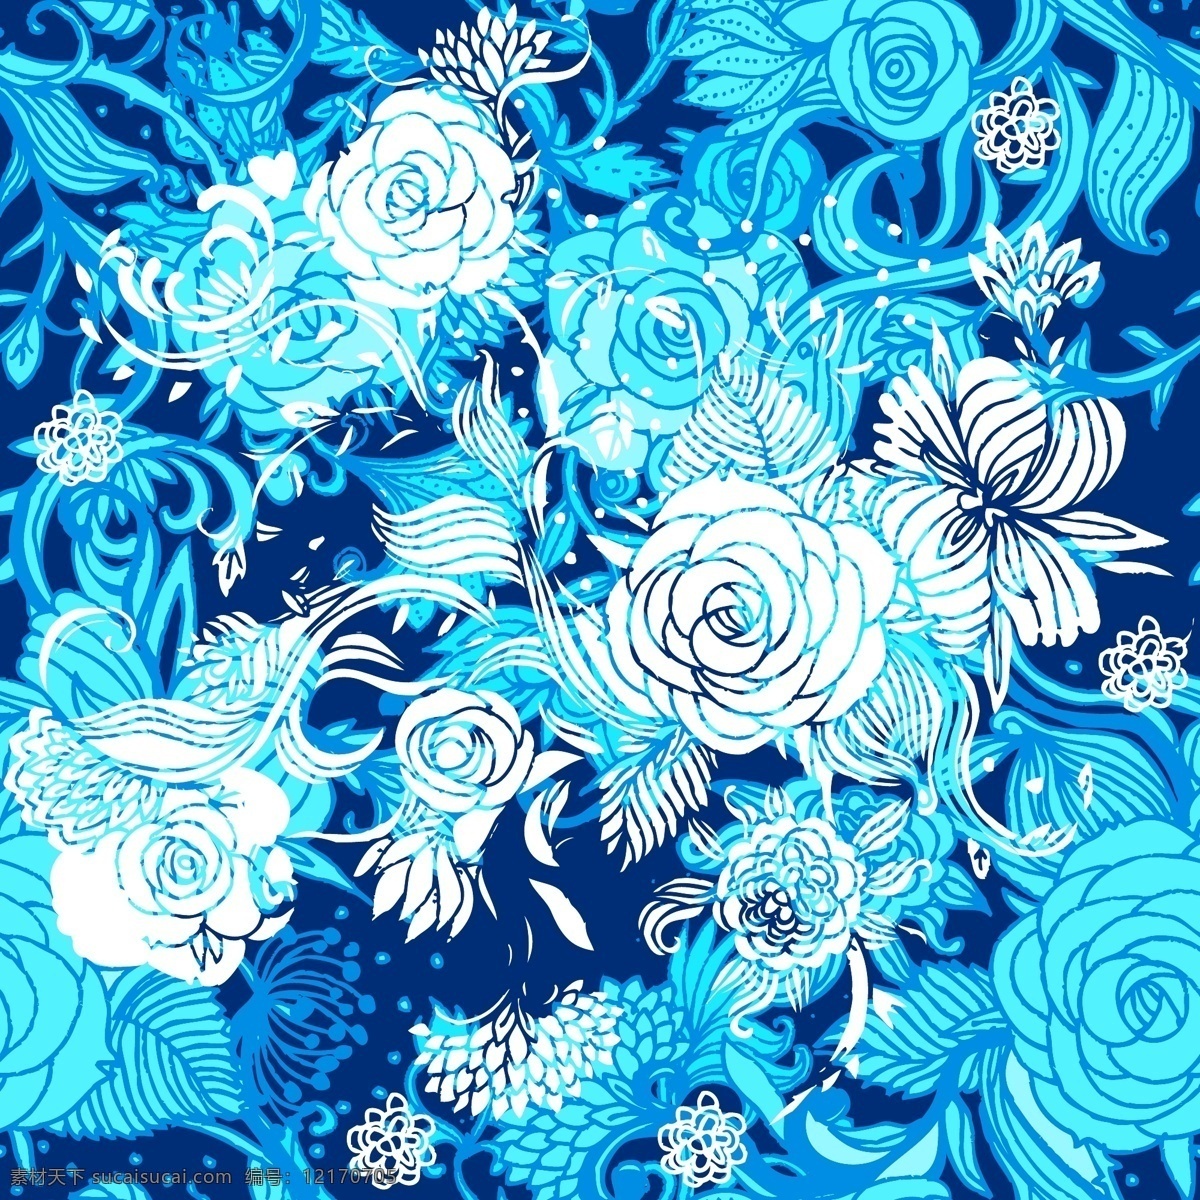 蓝色 花朵 无缝 背景 蓝色花卉图案 花卉背景 花朵背景 鲜花背景 背景花纹 底纹背景 底纹边框 矢量素材 青色 天蓝色